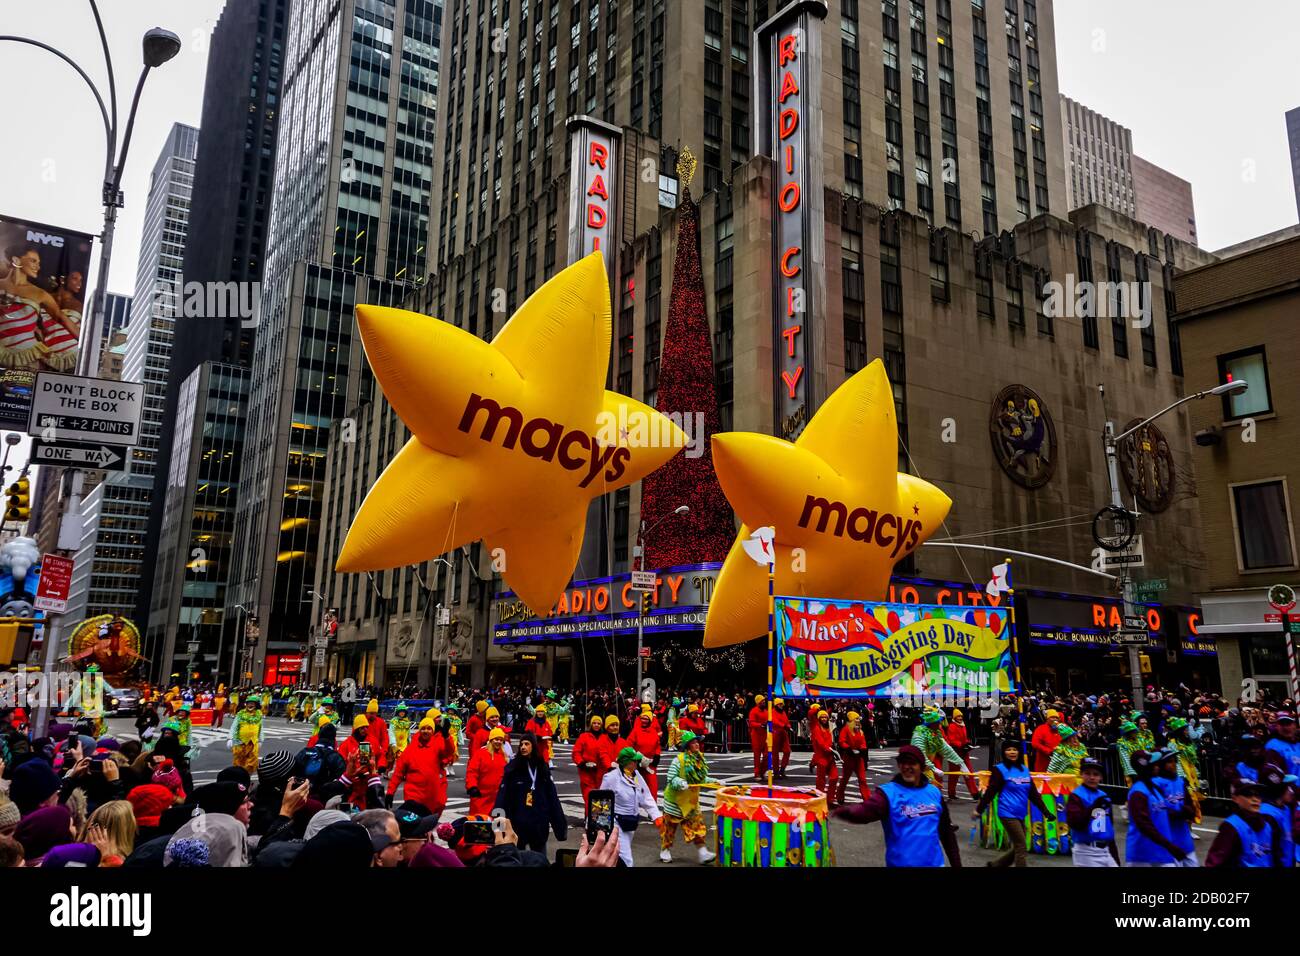 Le défilé annuel de Macy's Thanksgiving Day le long de l'avenue des Amériques avec des ballons flottant dans les airs. Banque D'Images